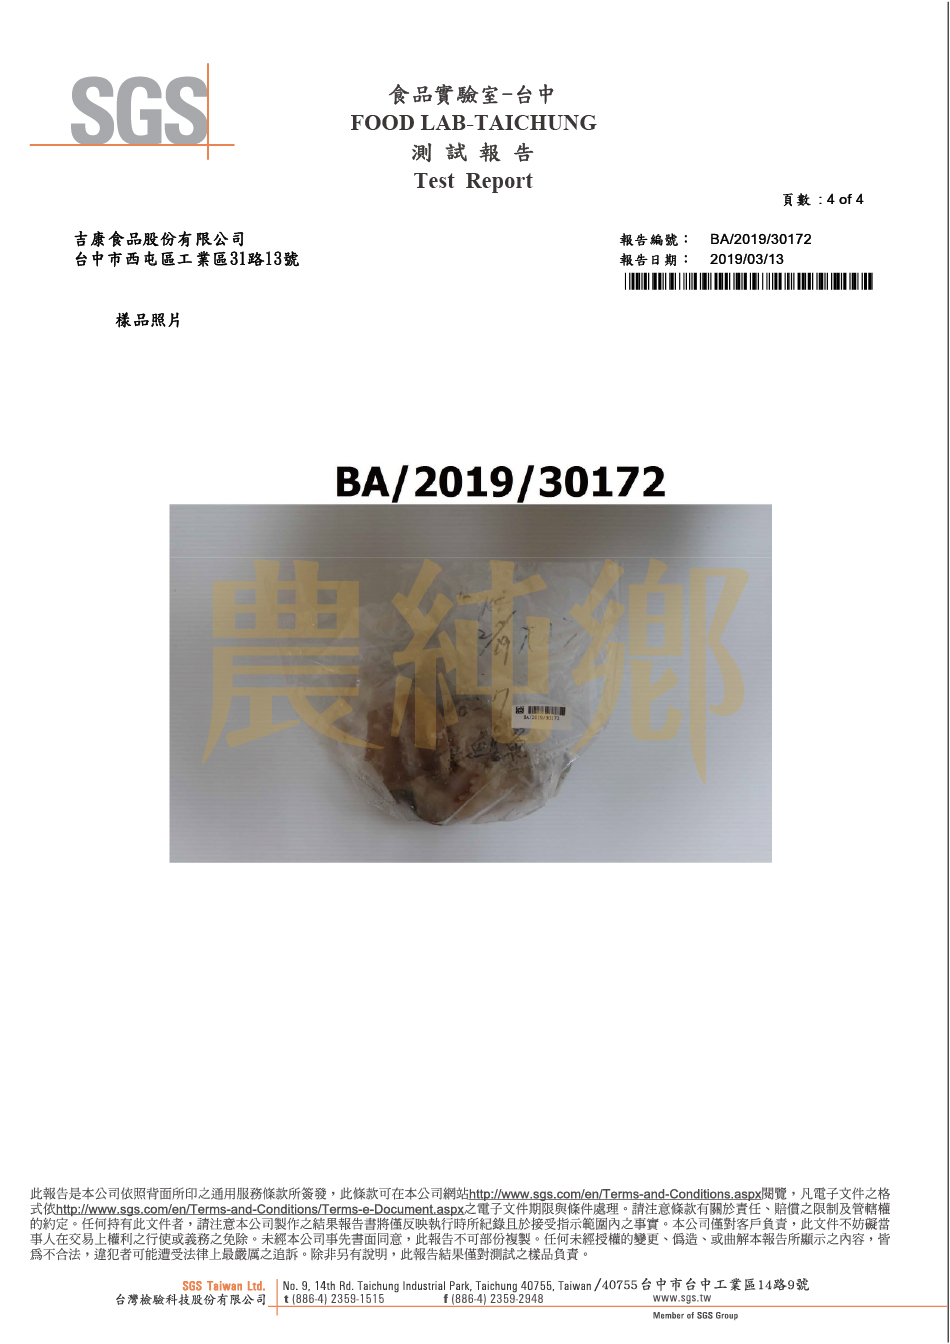 2019檢驗報告鱸魚精-動物用藥、重金屬、孔雀綠、揮發性鹽基態氮-4